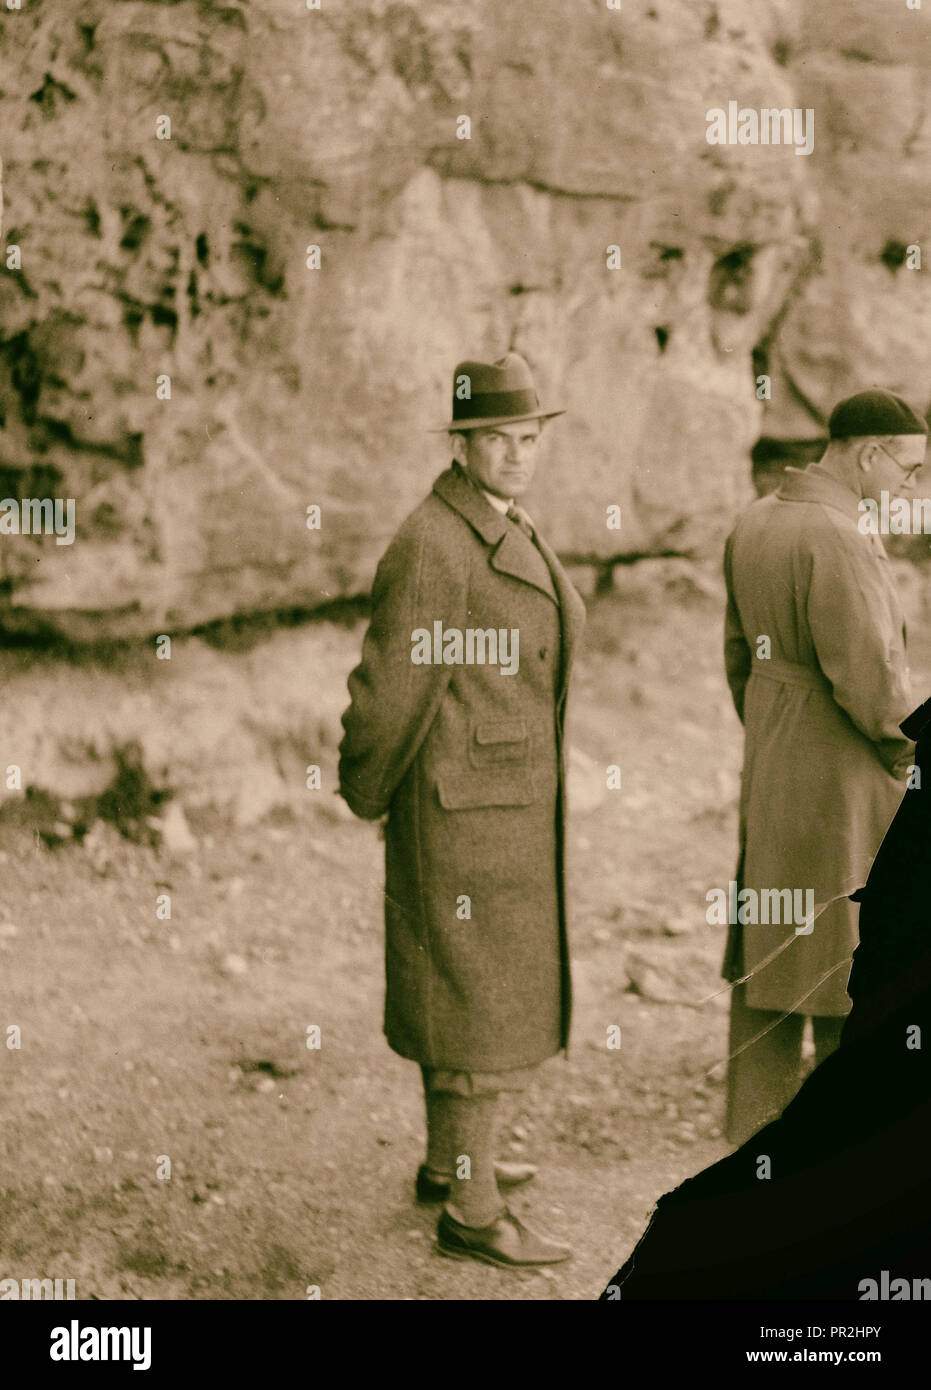 Prince héritier de Suède. La photographie montre le Prince, Gustaf Adolf de Suède probablement à Pétra, en Jordanie. Petra, Jordanie, 1925 Banque D'Images